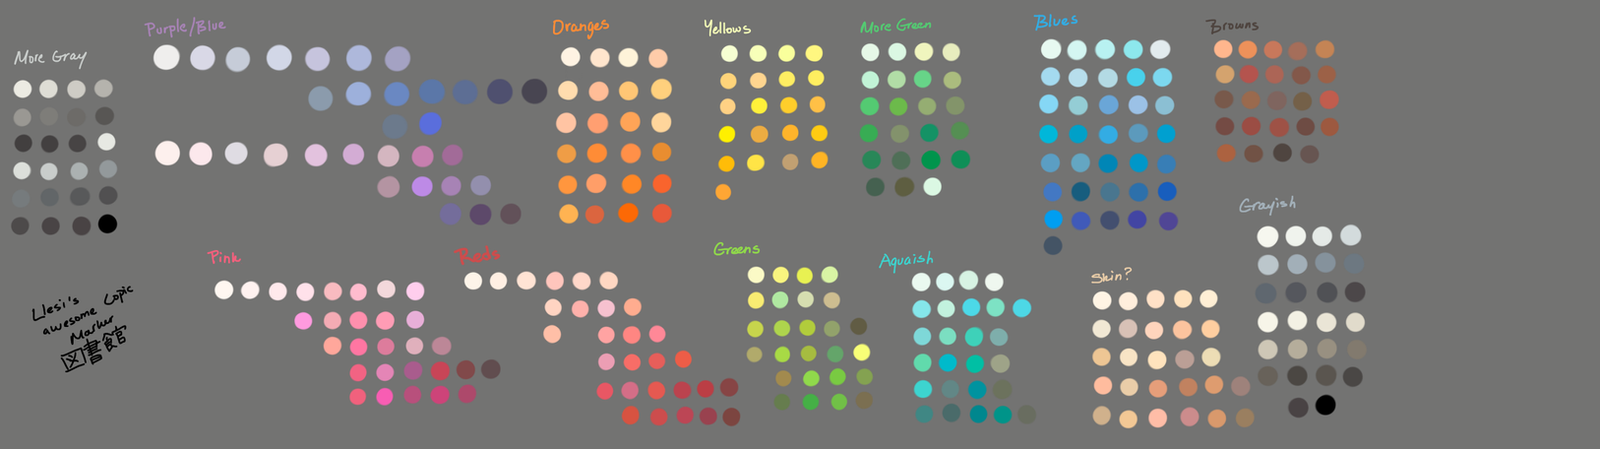 Copic Marker Color Palet by SoraniSasayaku on DeviantArt